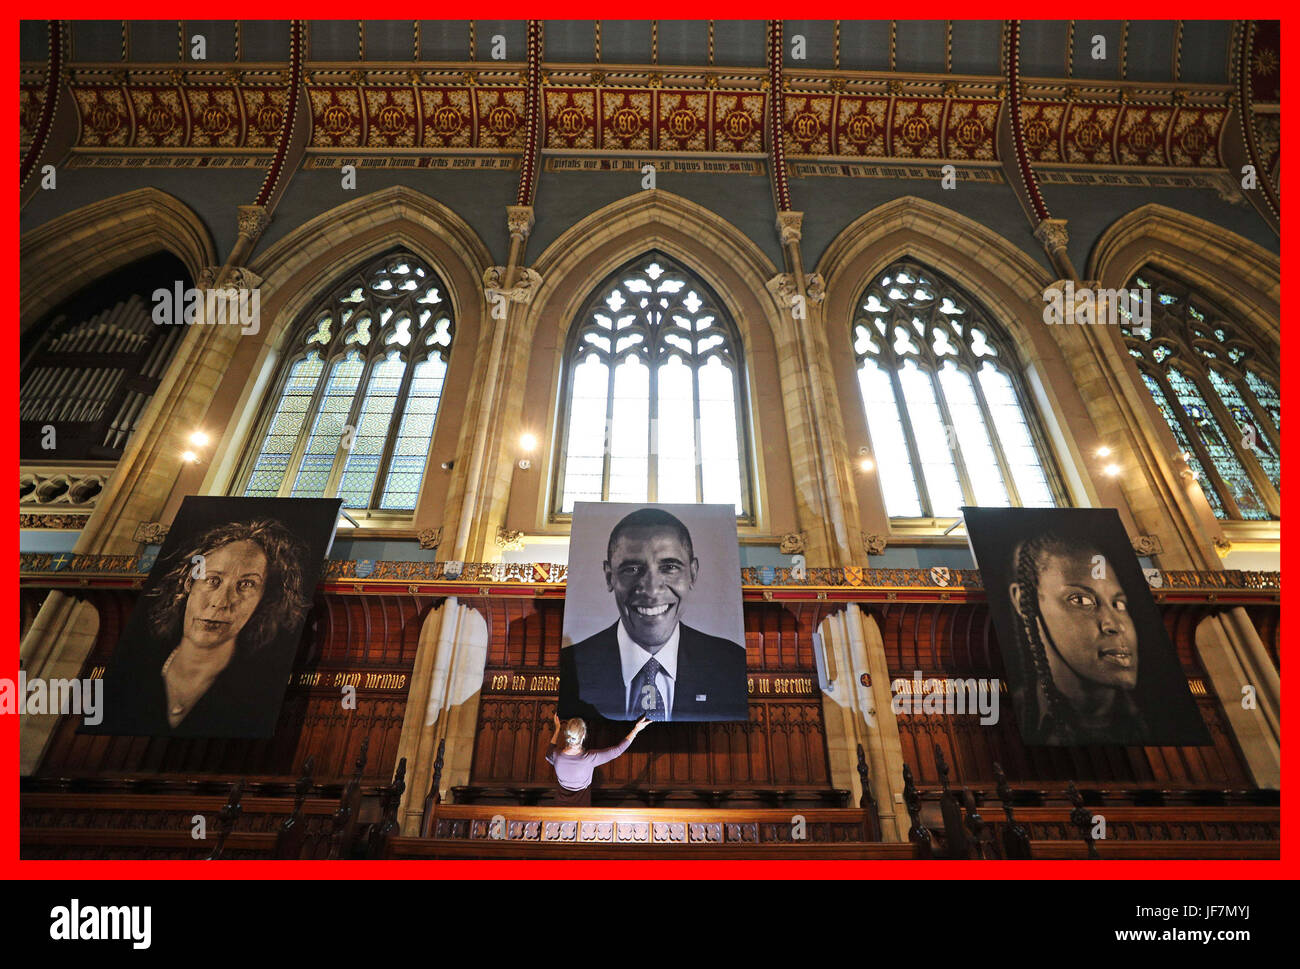 PABest Finale Anpassungen werden auf die erste Kunstausstellung in St. Cuthbert Kapelle am Ushaw in Durham, sechs zwei Meter hohe Wandteppich Porträts von hyper-realistischen Amerikaners Chuck Close kuratiert werden. Stockfoto